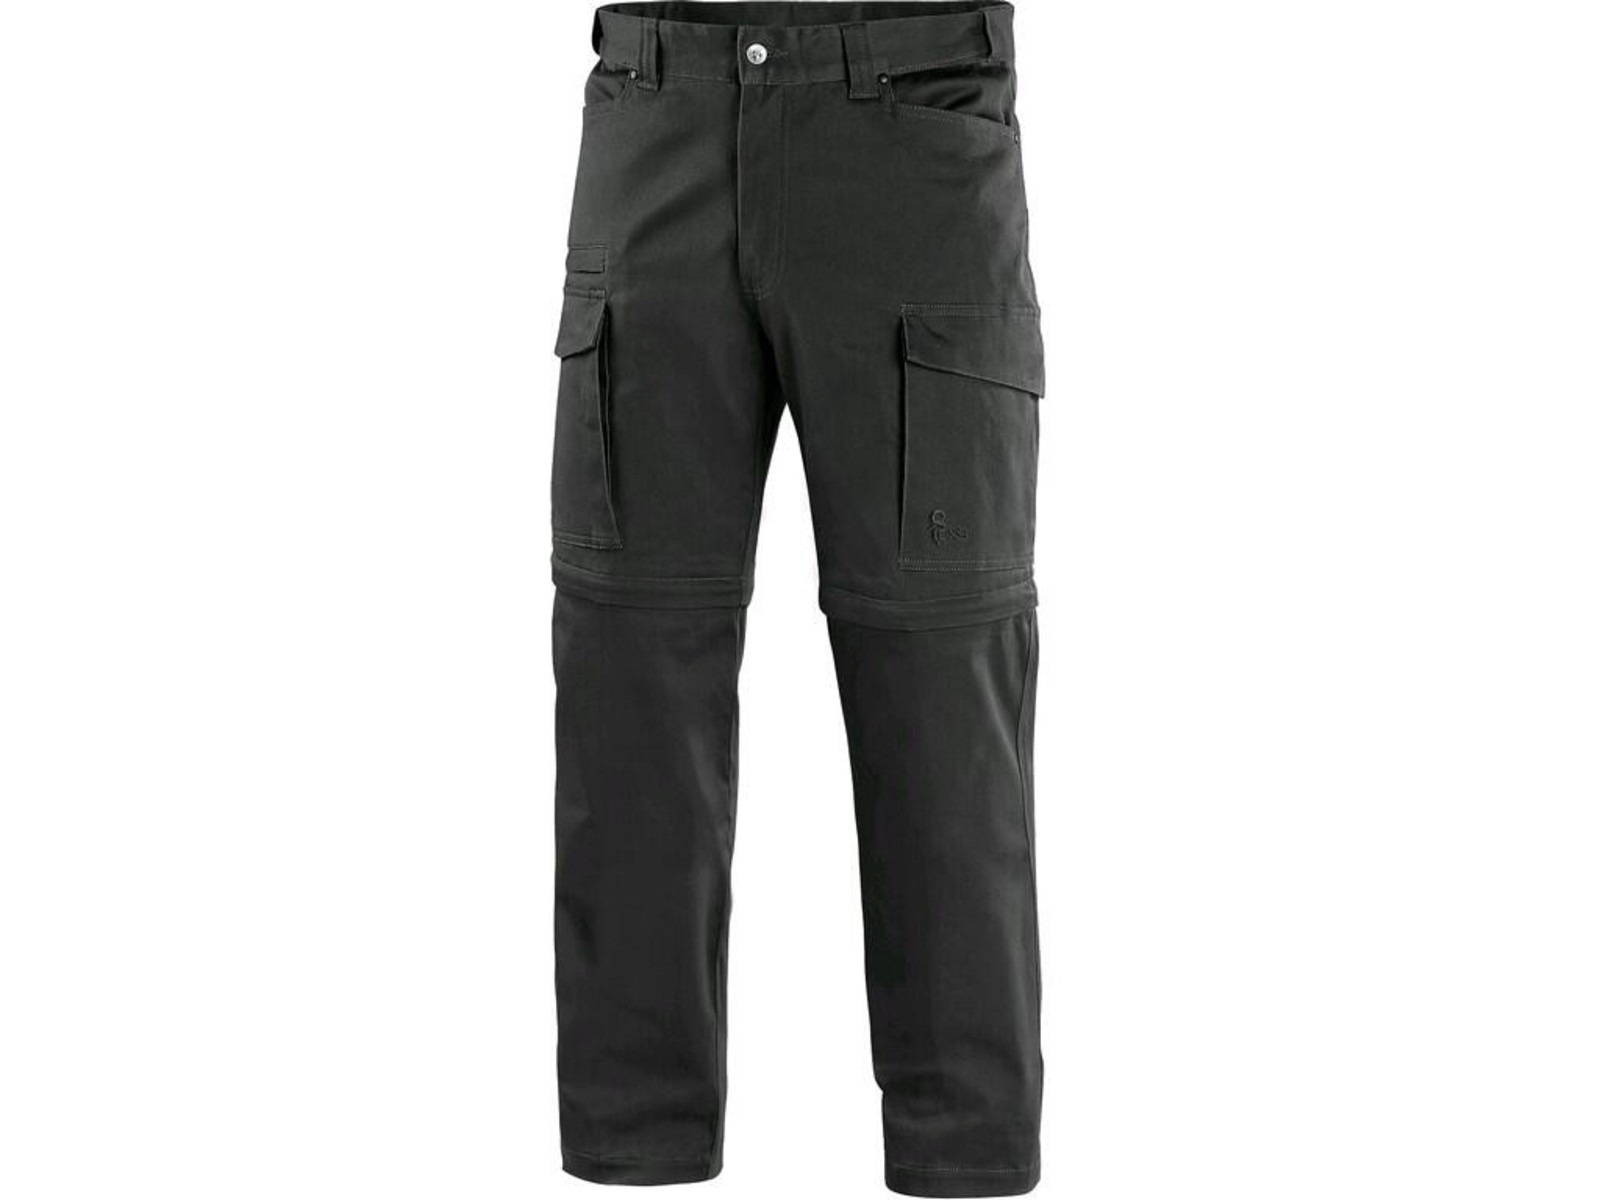 Pánske nohavice CXS Venator 2v1 - veľkosť: 56, farba: čierna